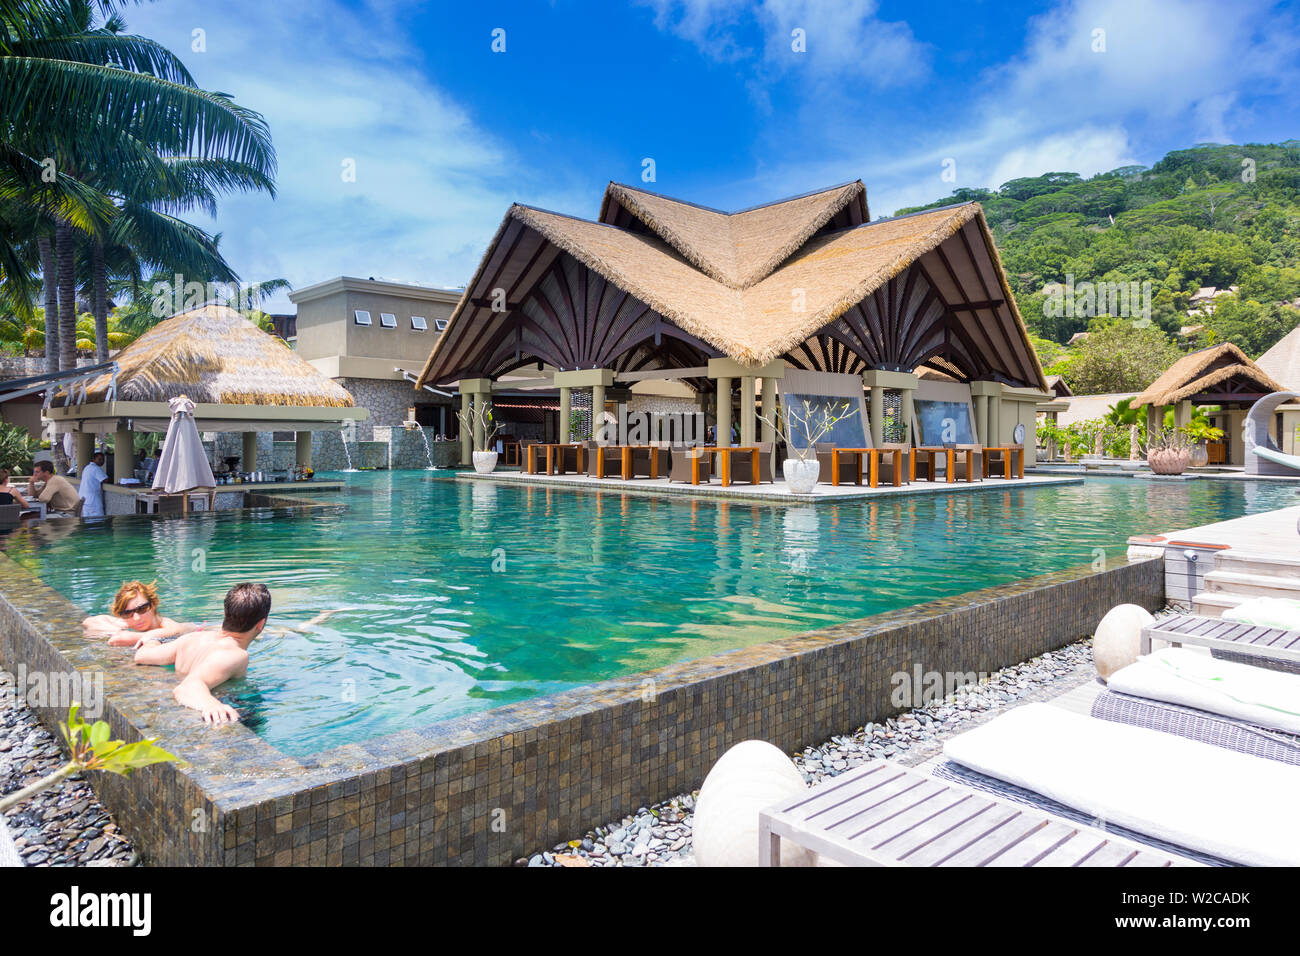 Pool at the Le Domaine de l'Orangeraie resort hotel, La Digue, Seychelles Stock Photo